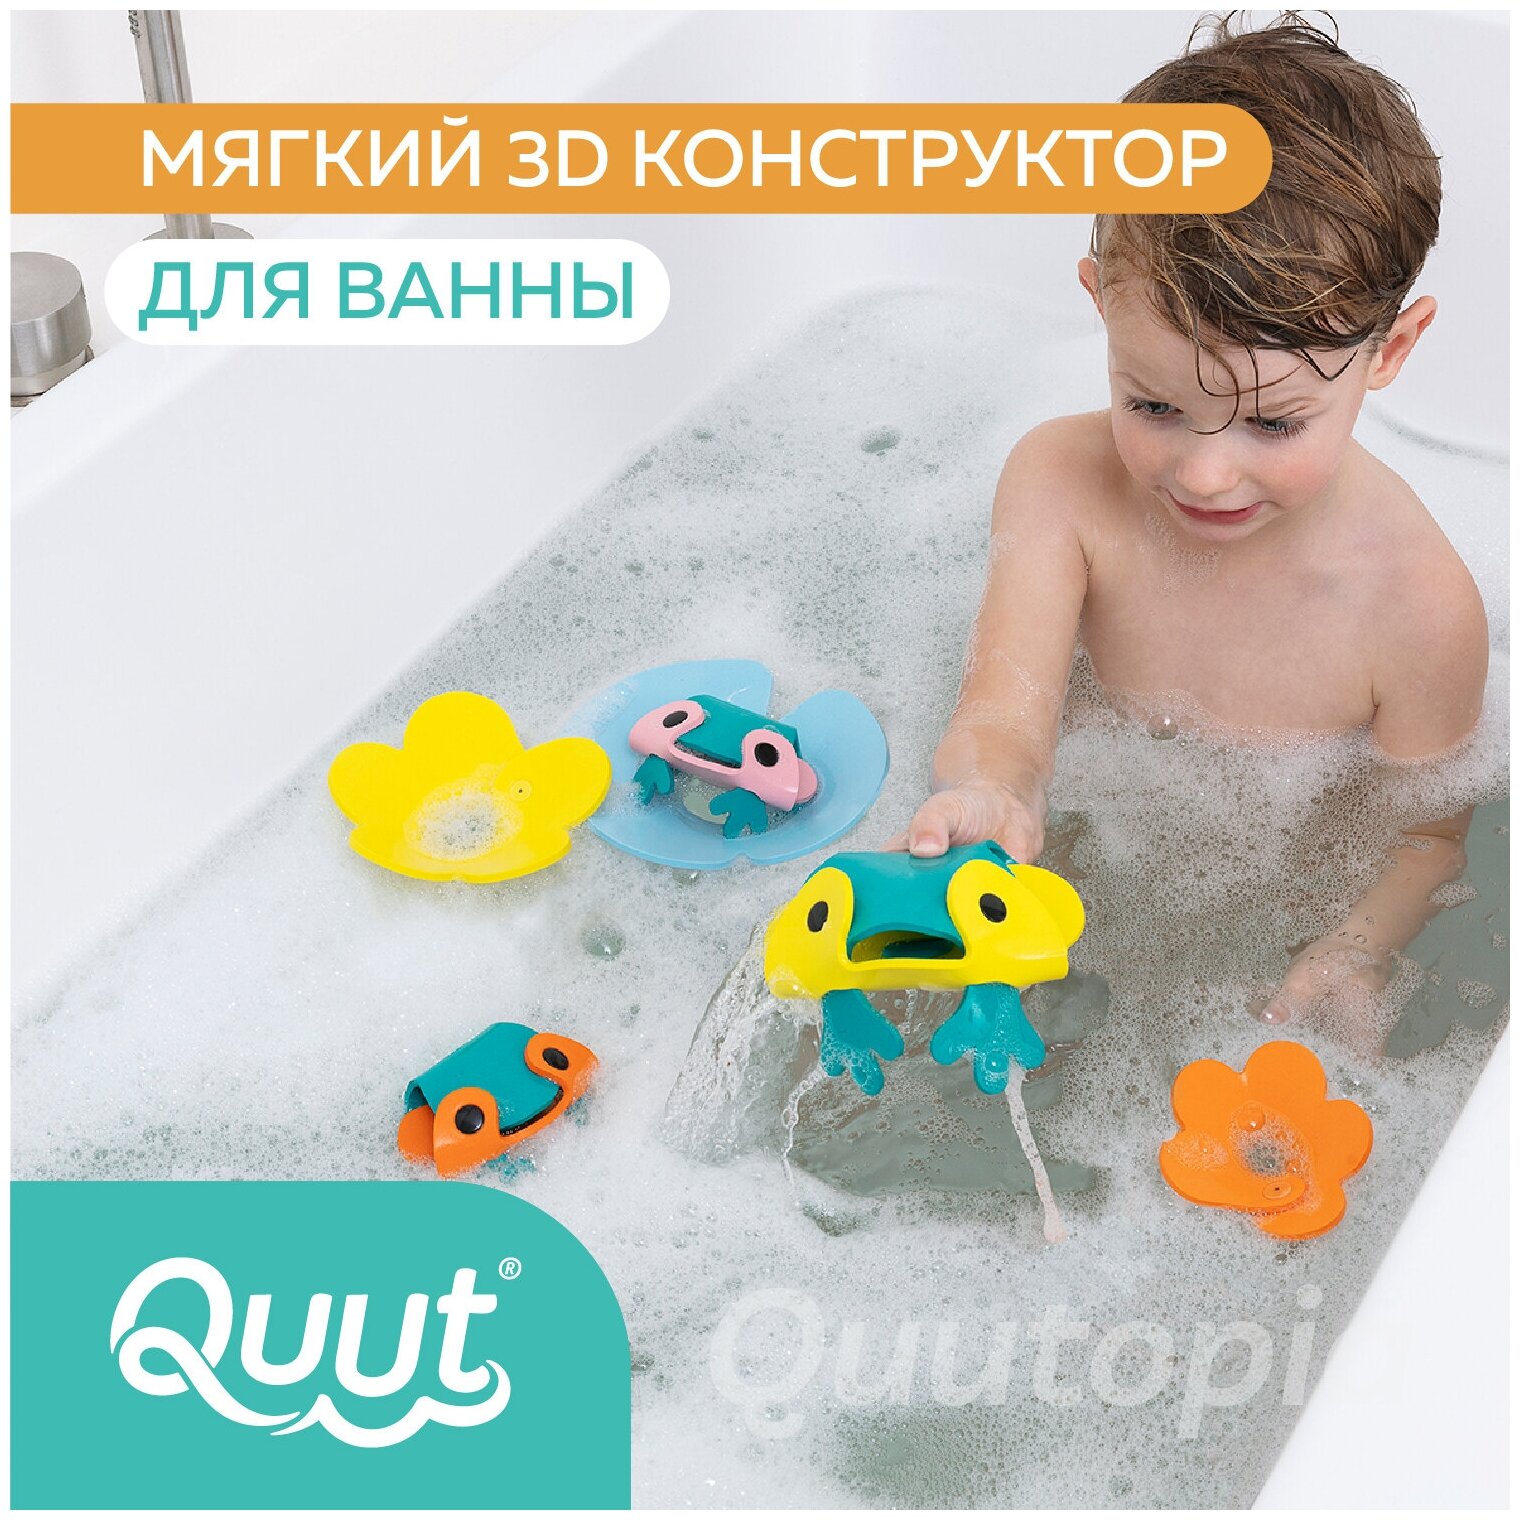 Мягкий 3D конструктор для игры в ванне Quutopia. Пруд с лягушками, 9 эл